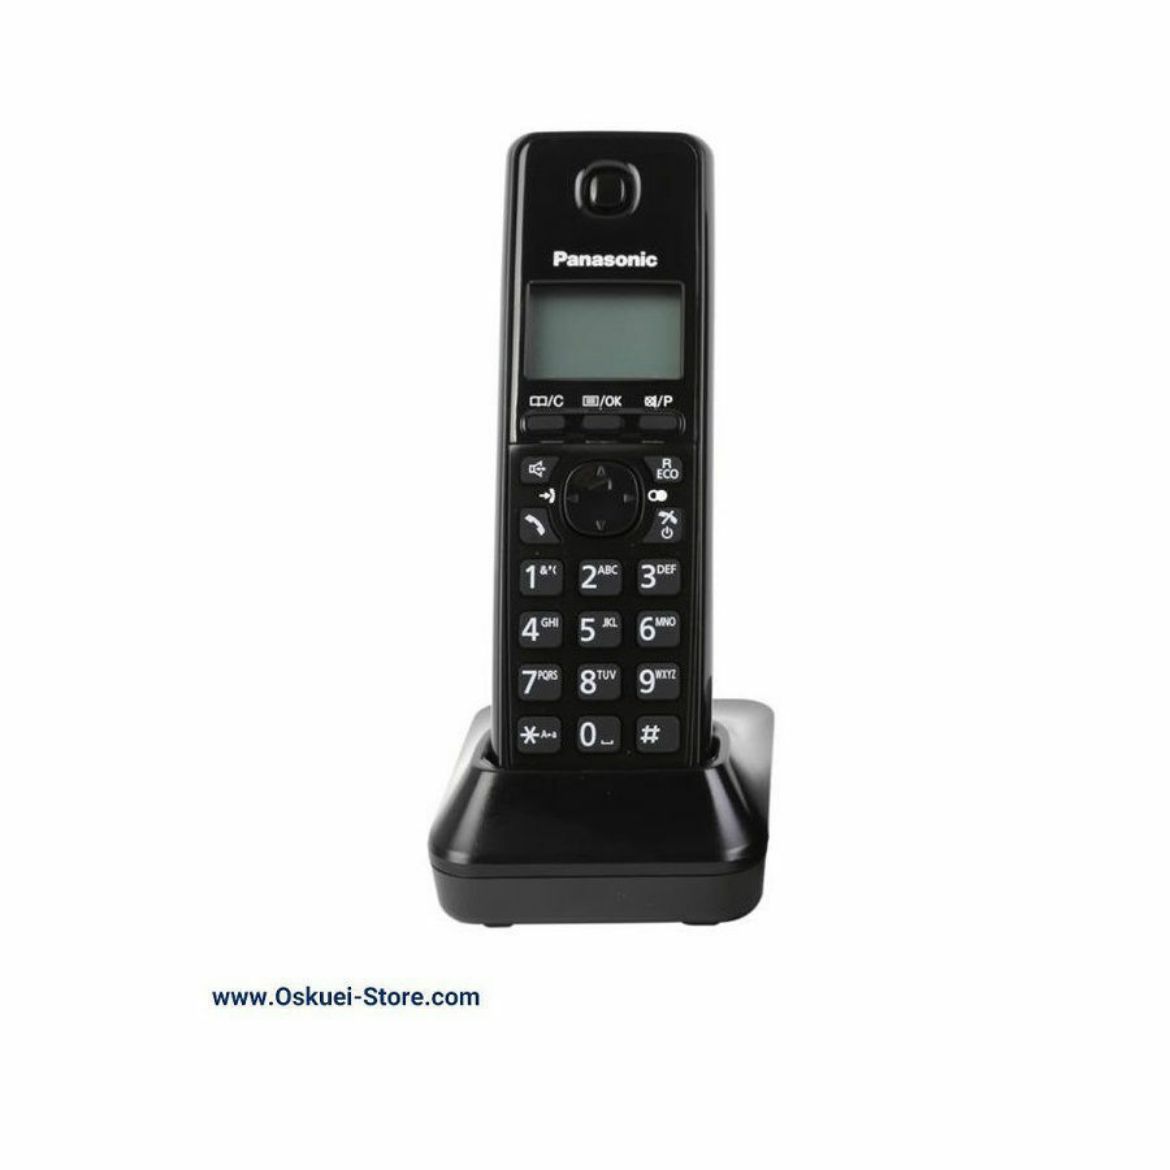 Panasonic KX-TGA277 Cordless Telephone Black